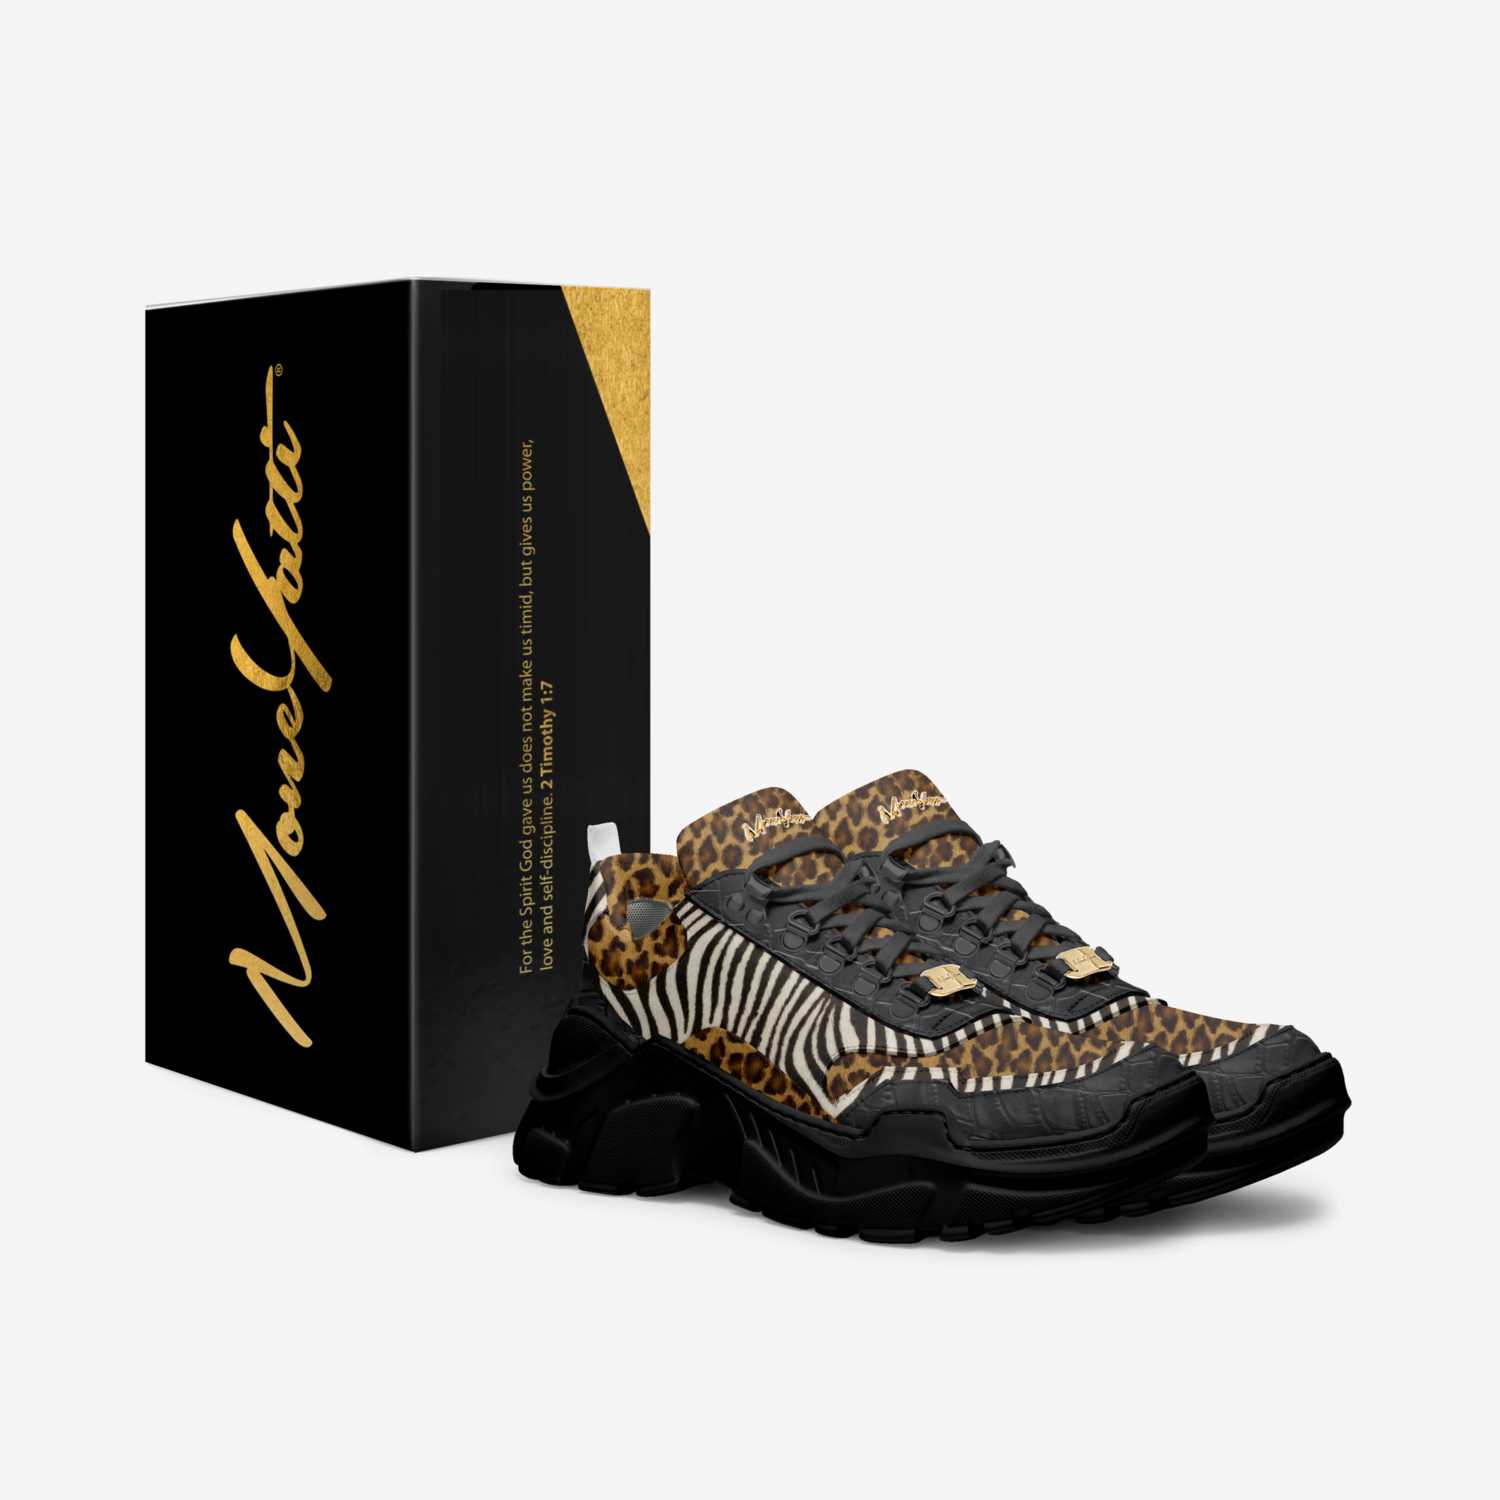 Moneyatti Murks39 custom made in Italy shoes by Moneyatti Brand | Box view